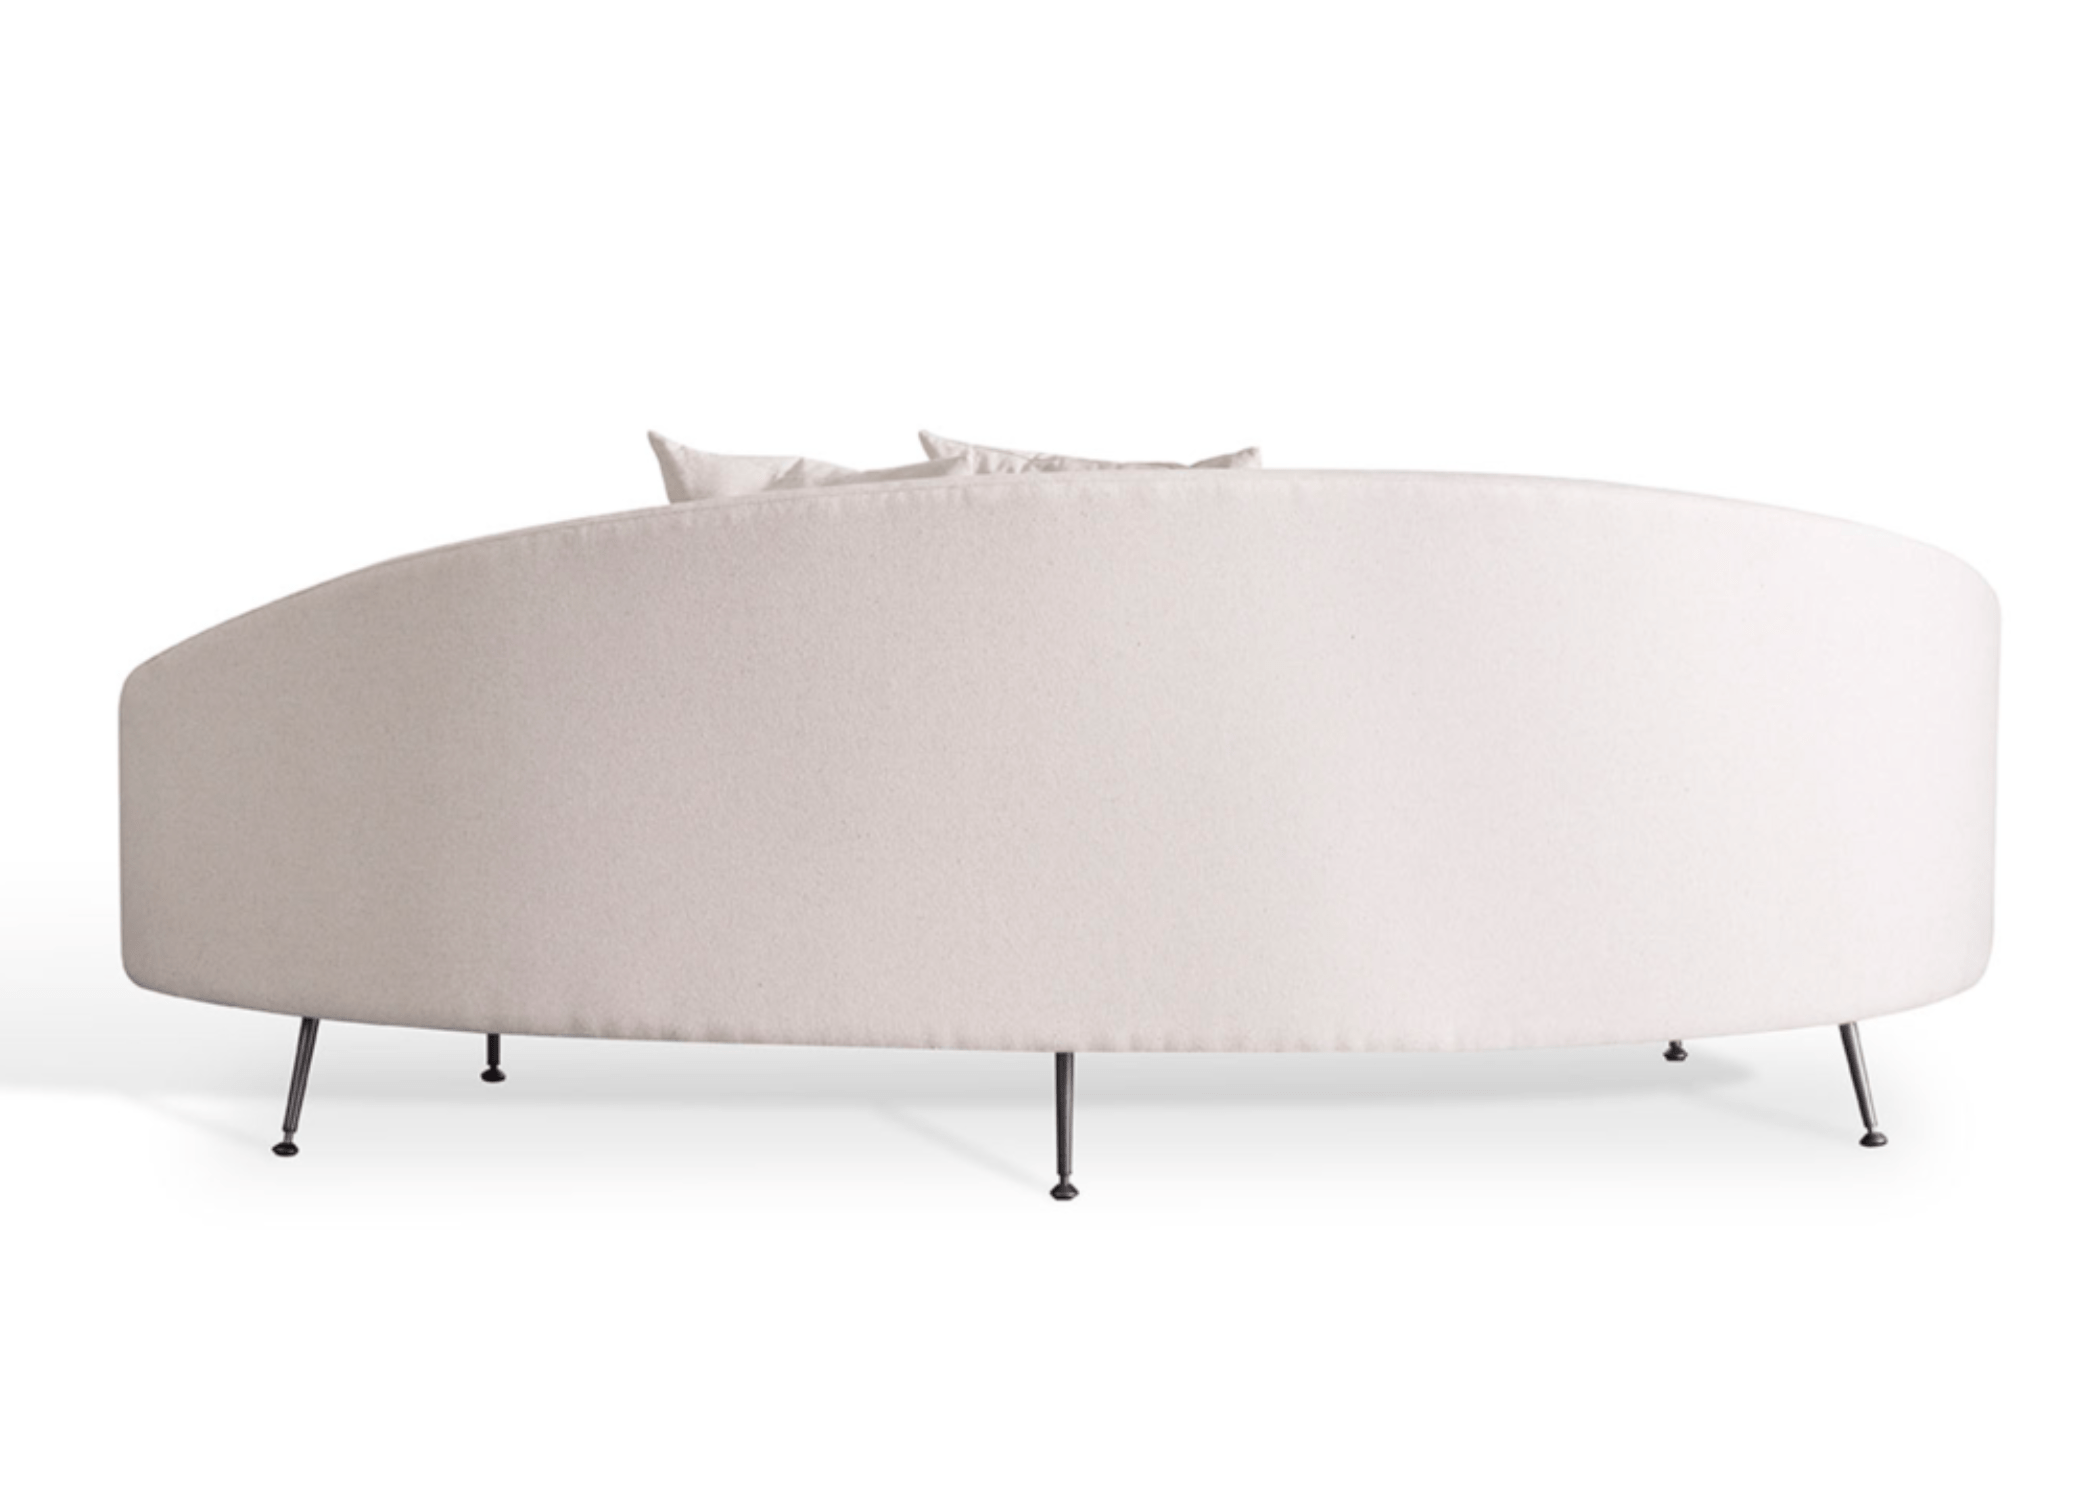 Sofá Donatello com estrutura interna em multilaminado e espuma de densidade 26 soft, garantindo conforto e durabilidade.